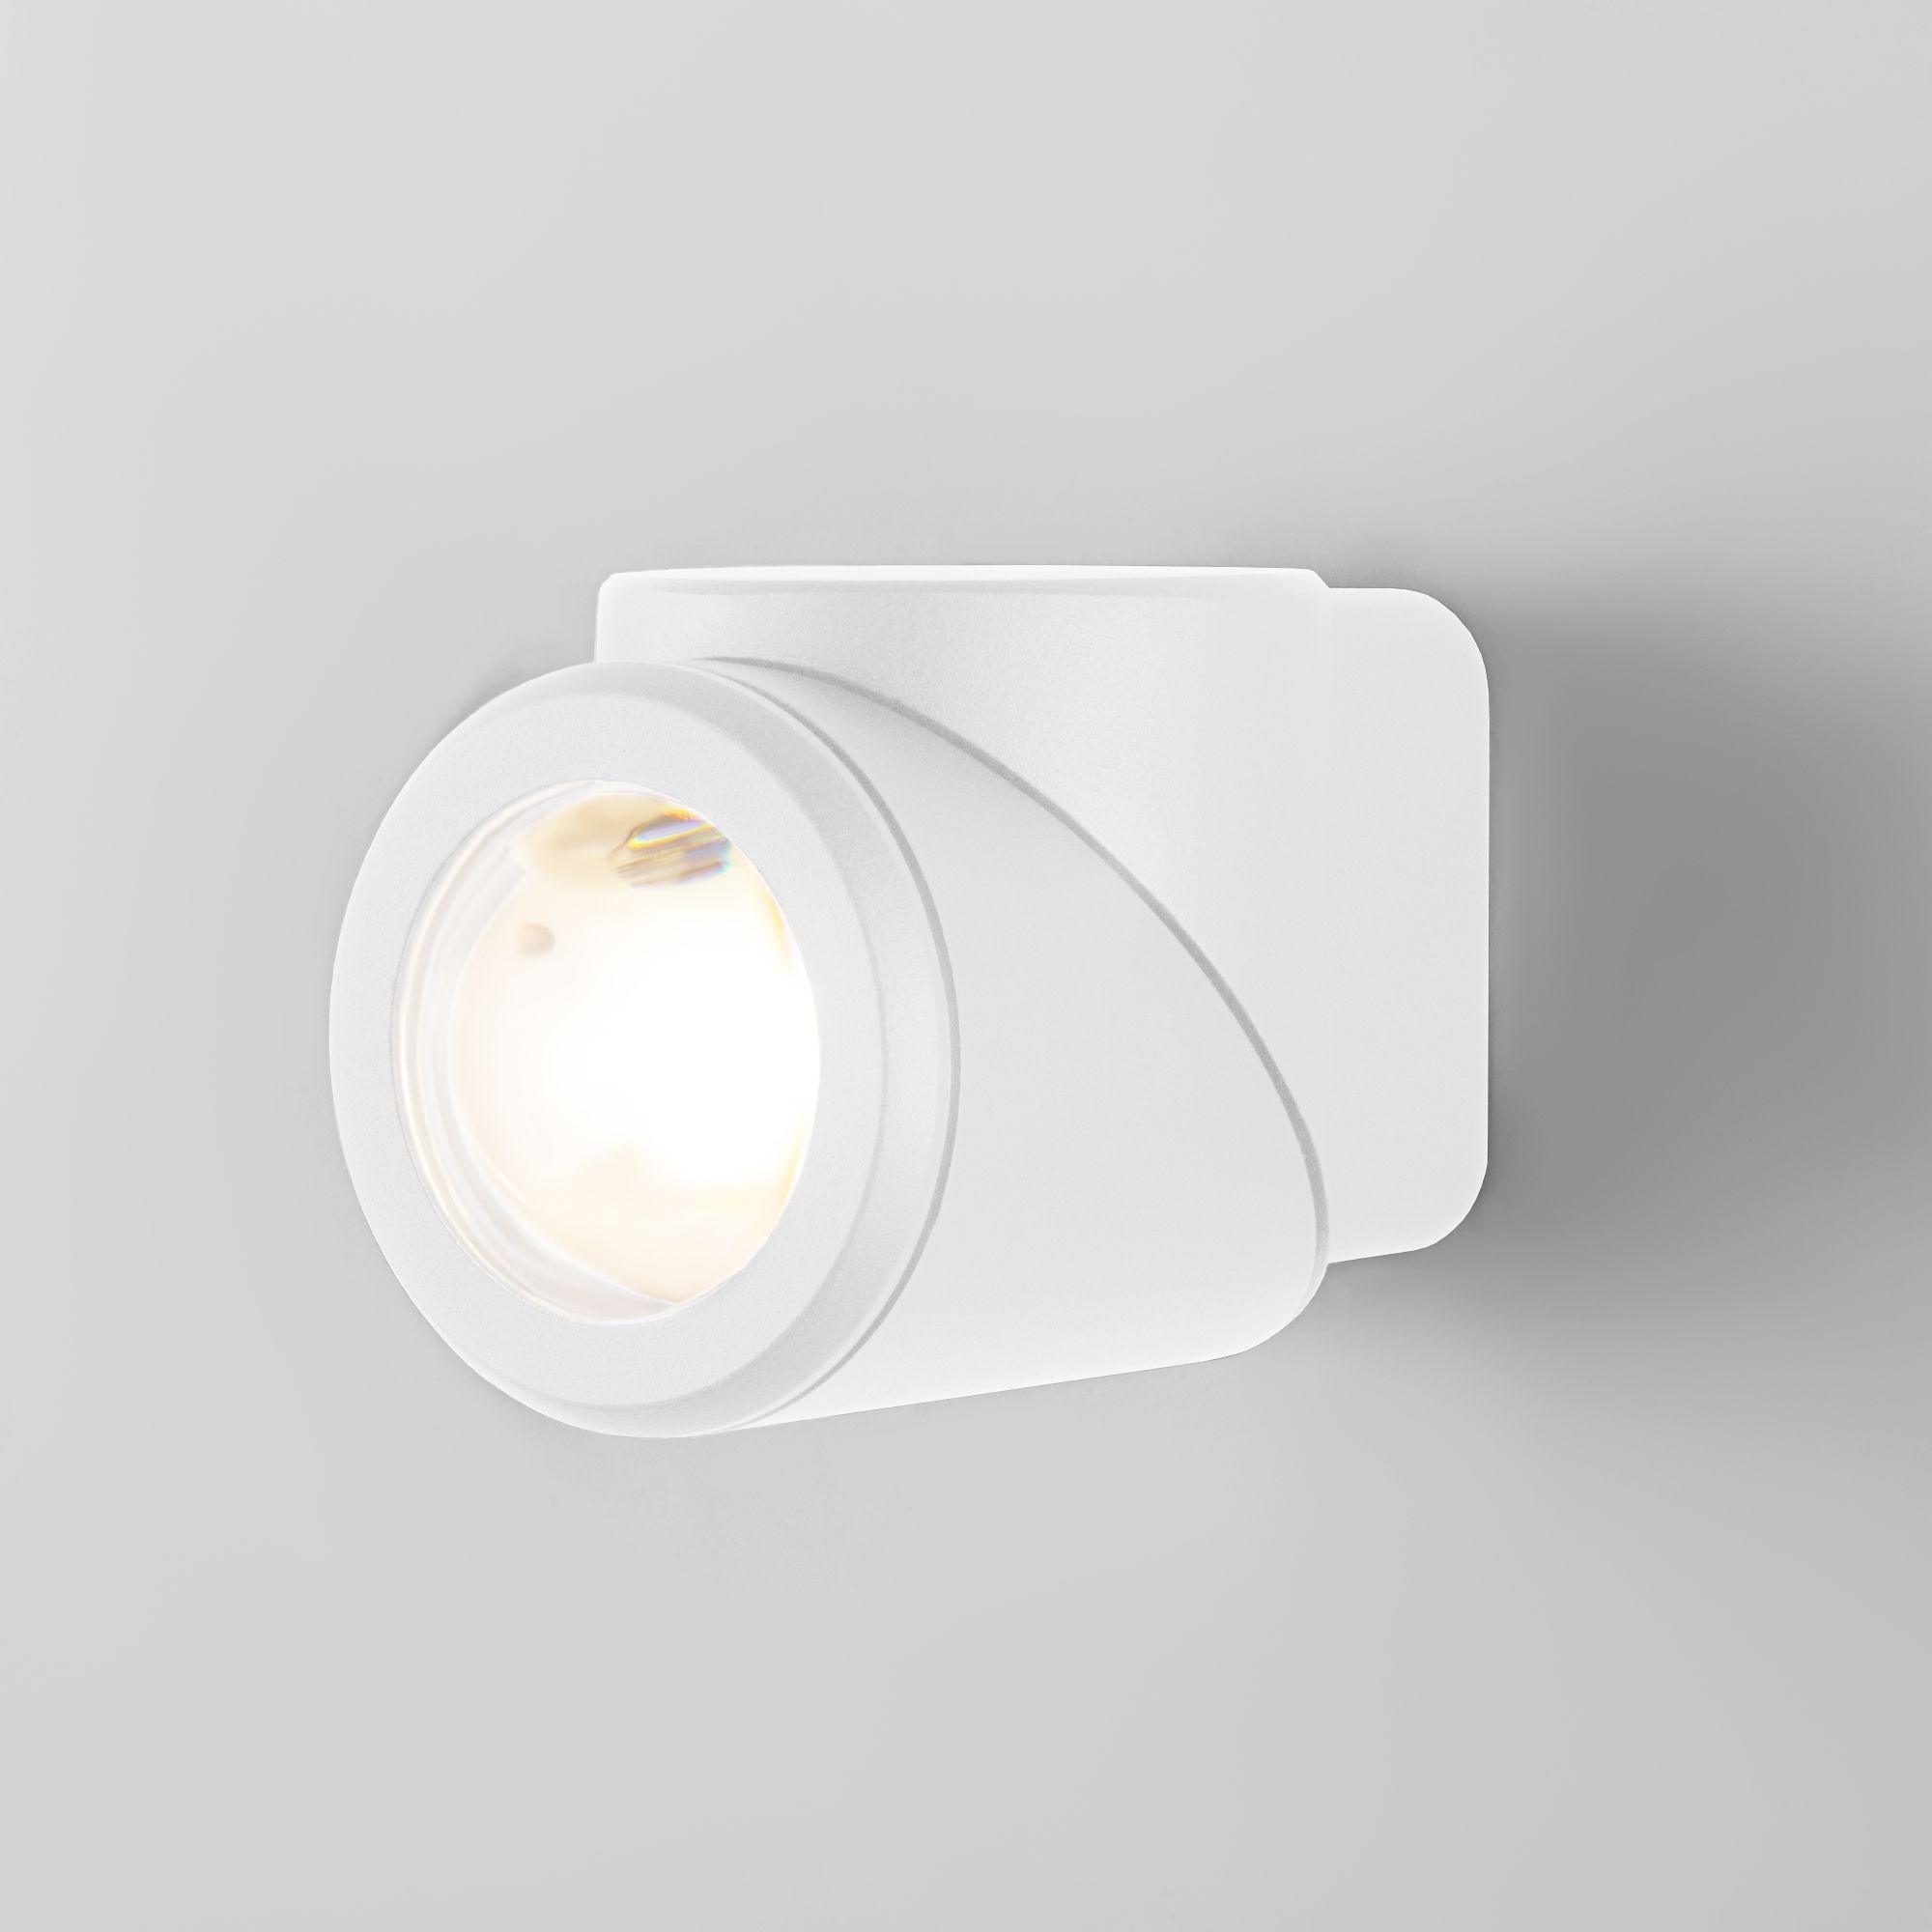 Уличный настенный светодиодный светильник GIRA U LED IP54 35127/U белый